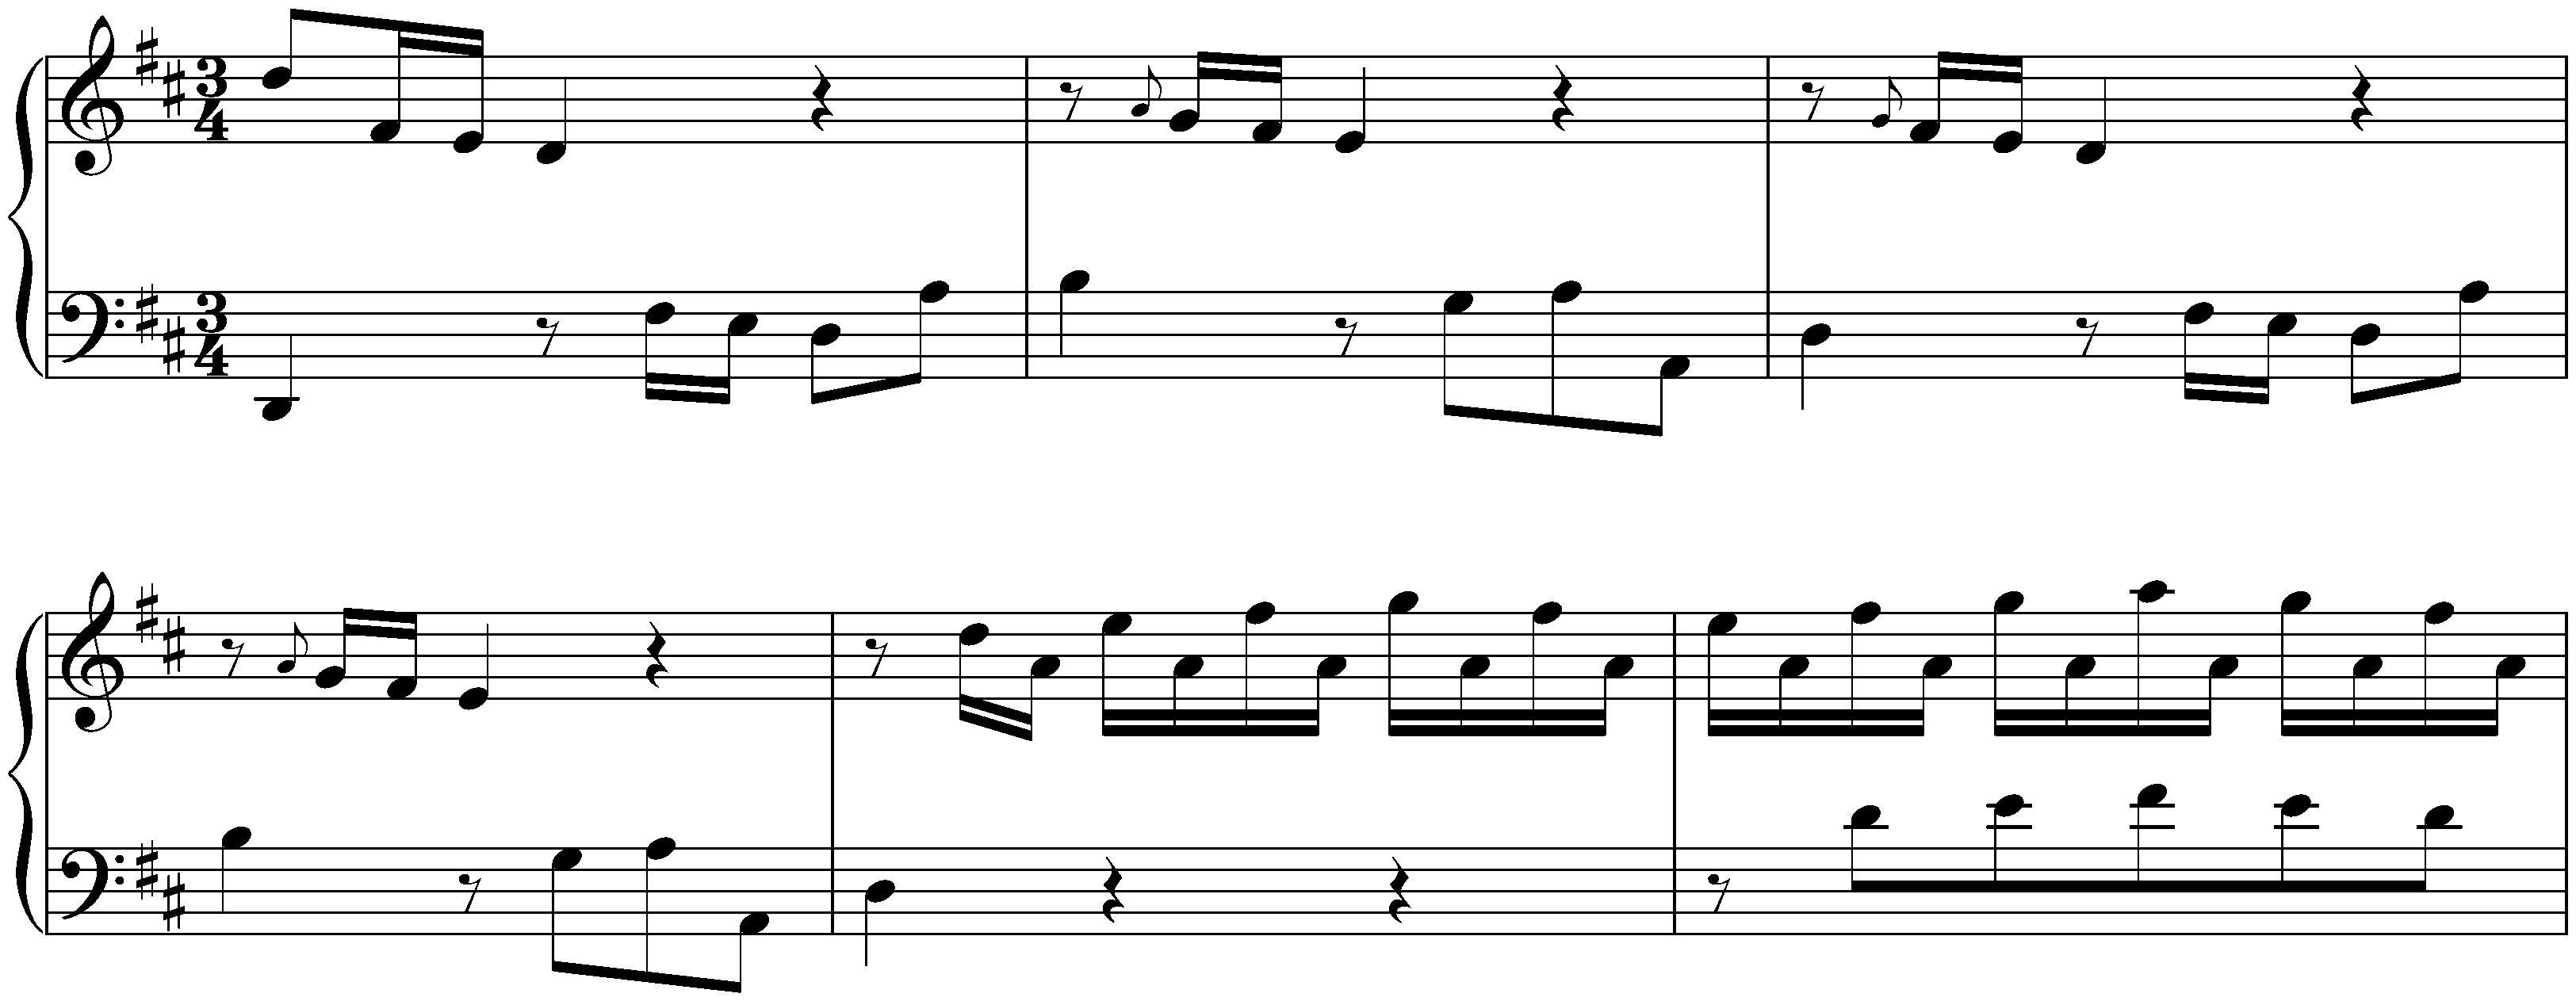 Sonatas found in Zaragoza; 3. D major